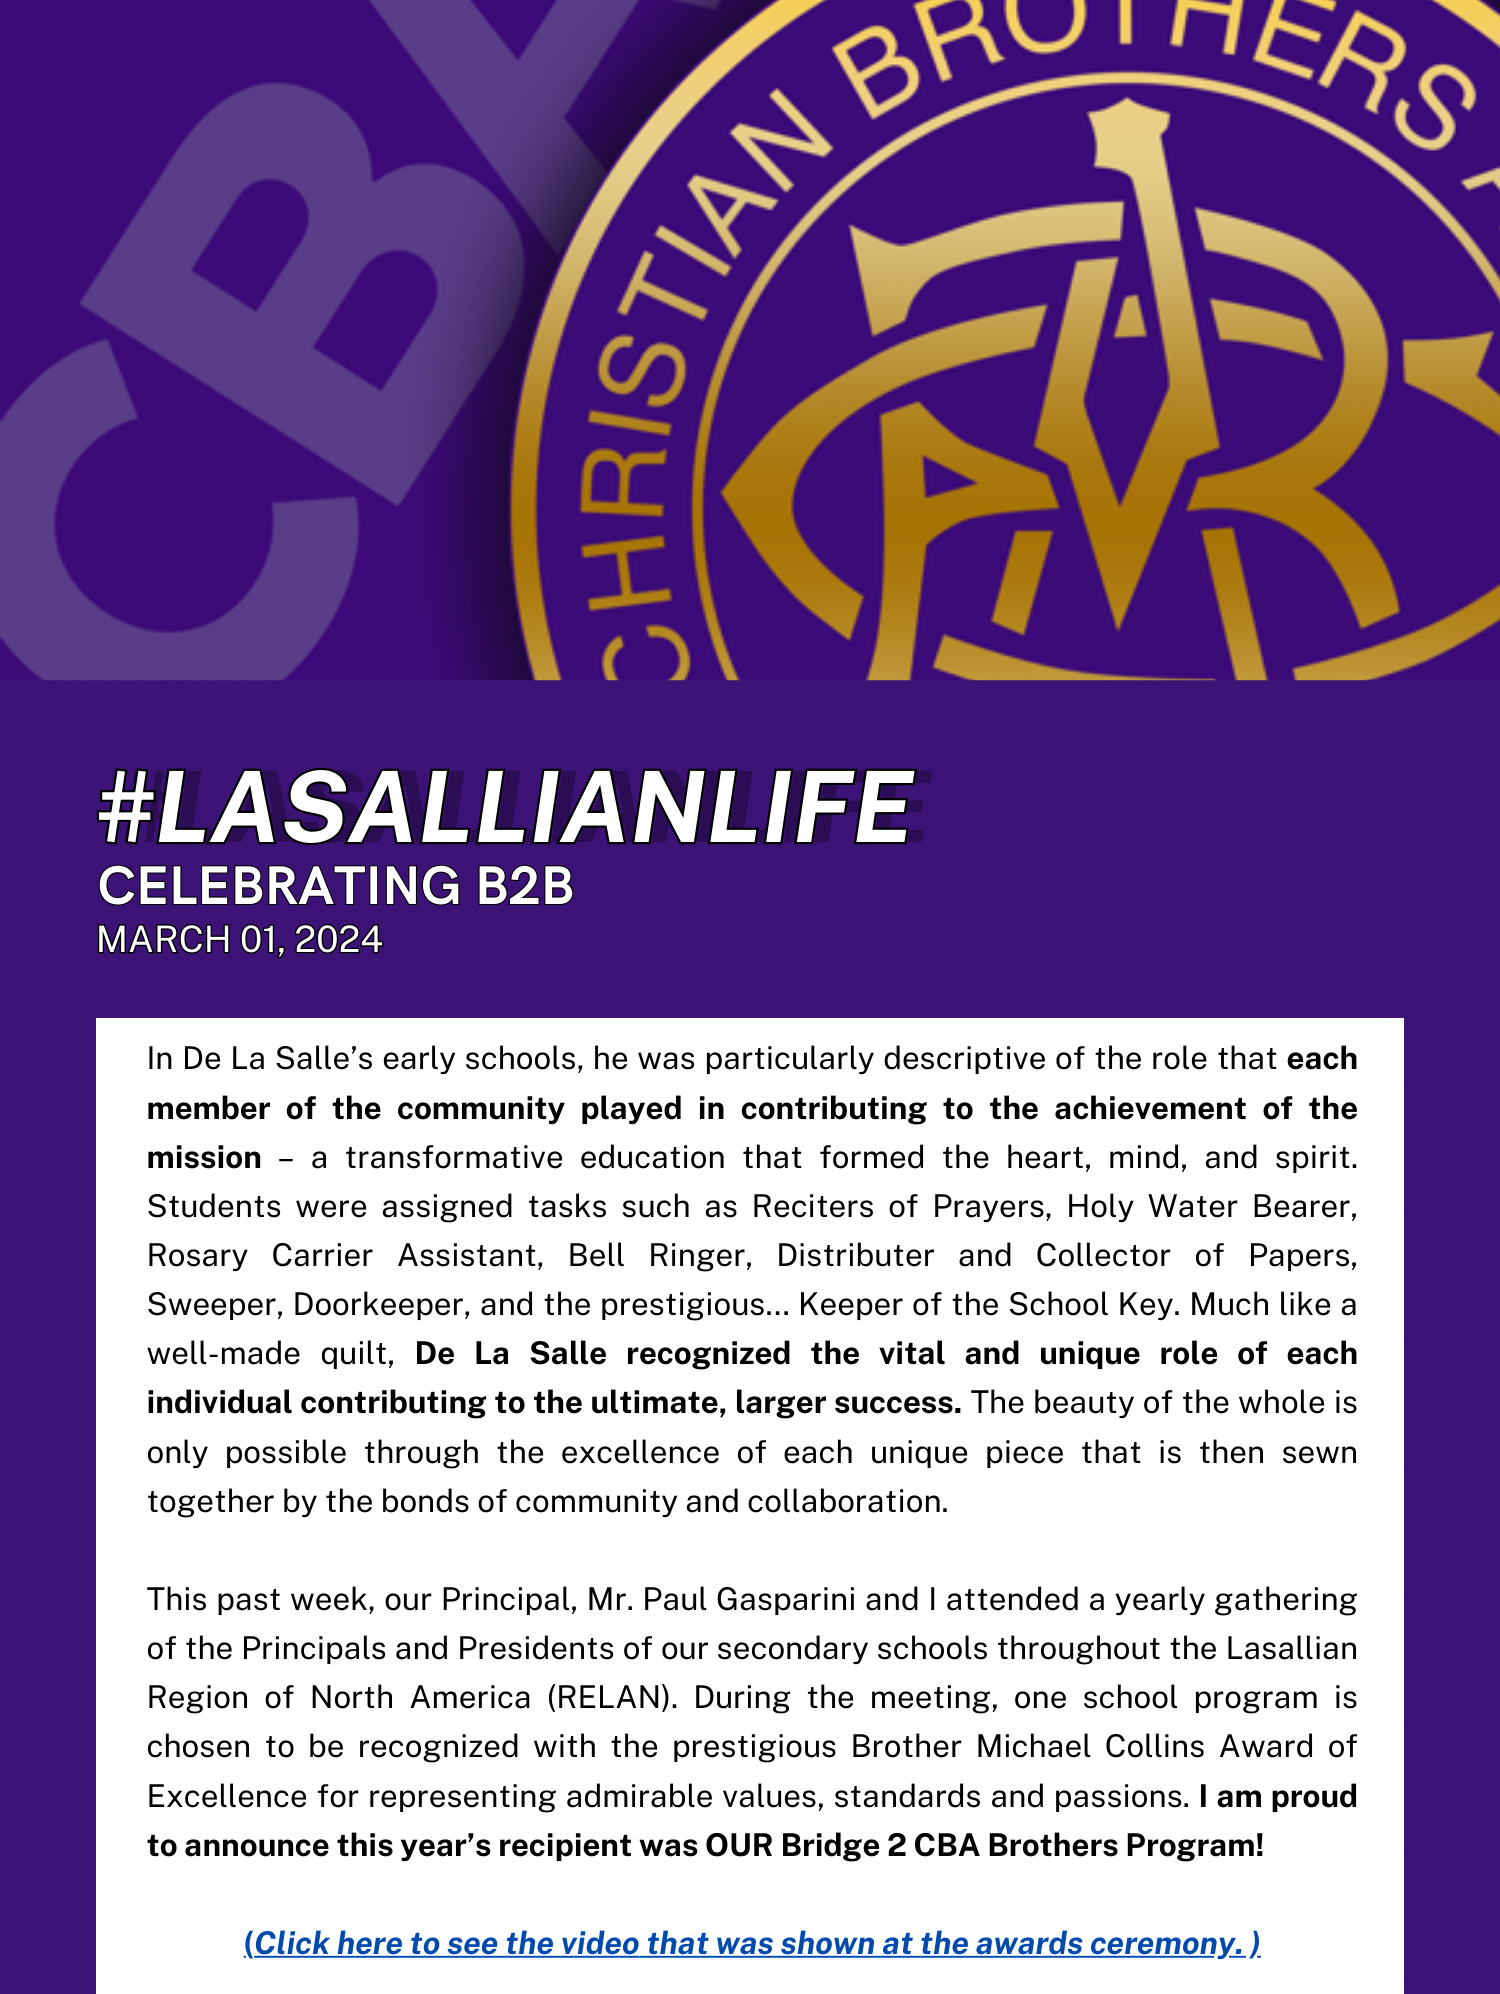 #LasallianLife : Celebrating B2B